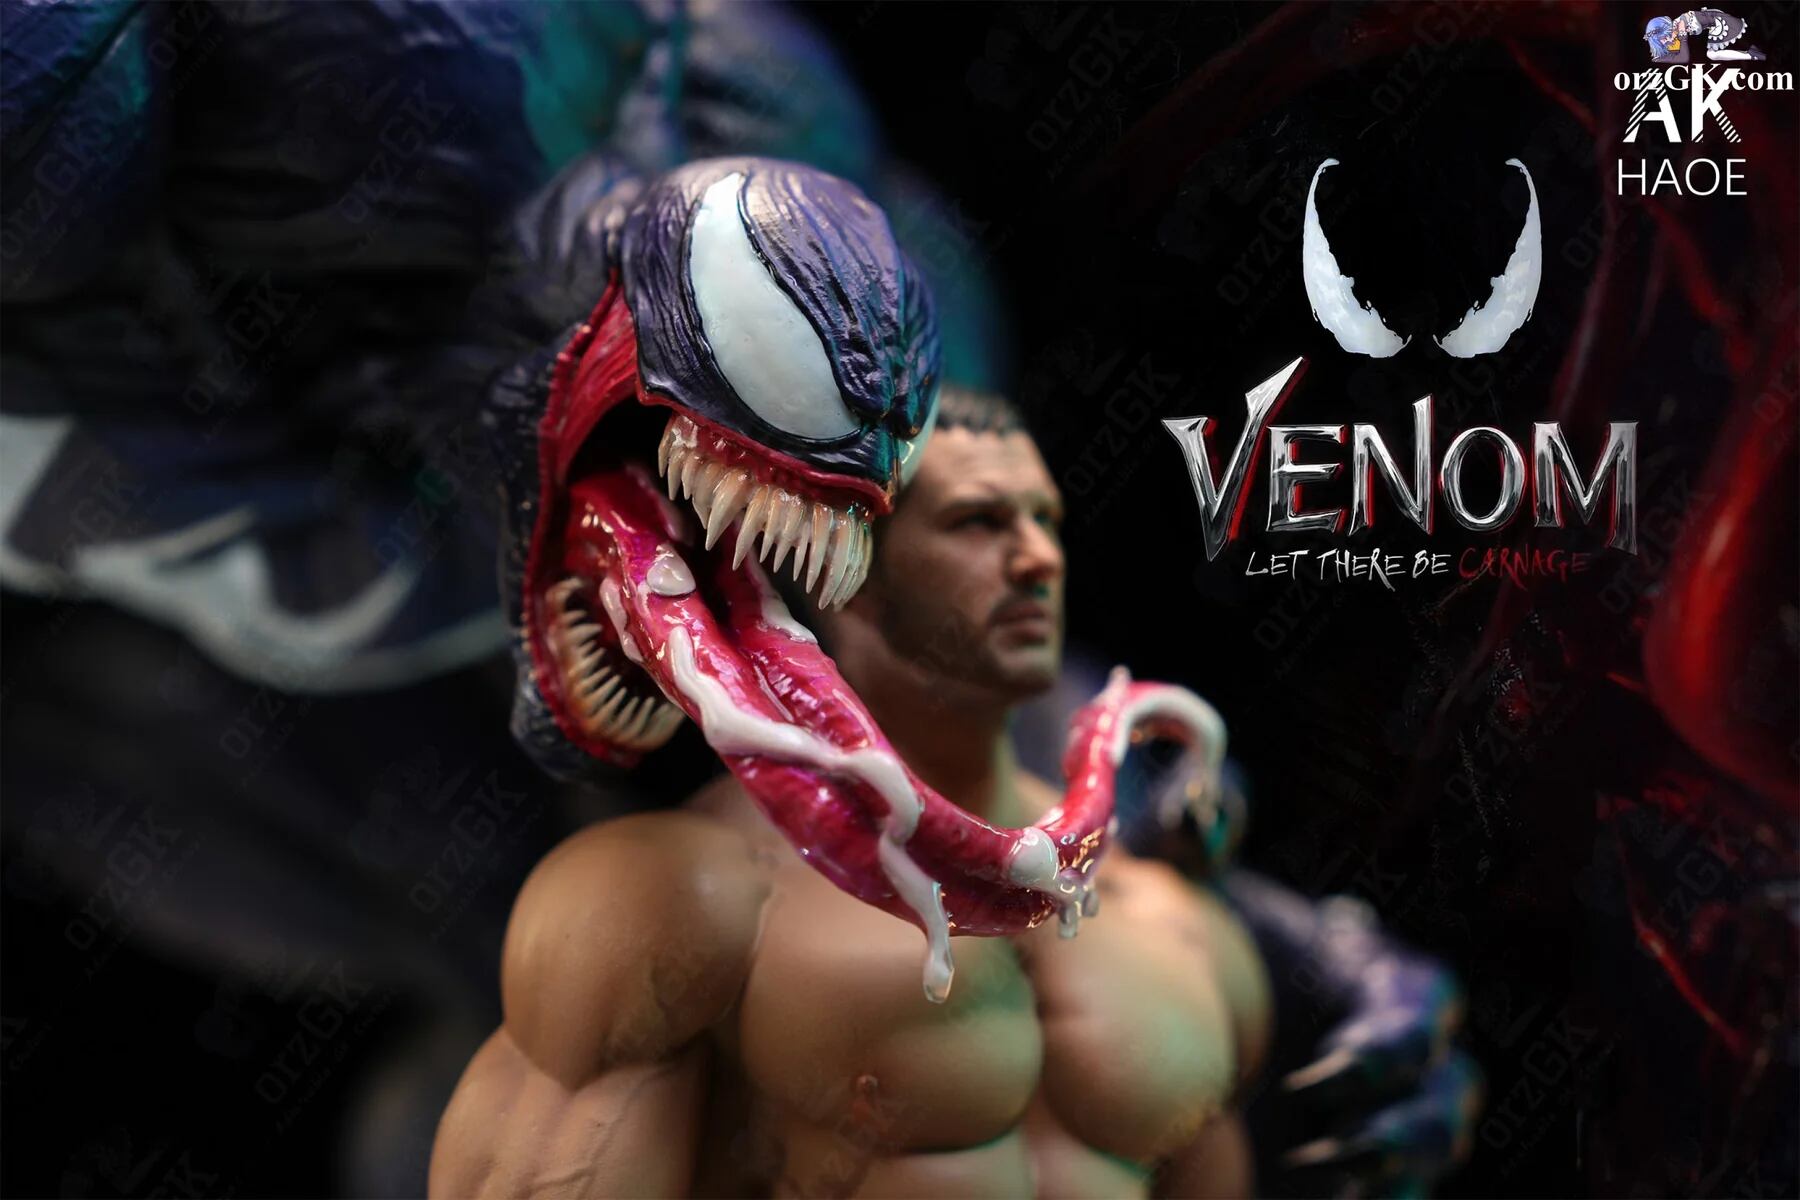 Revelan figura +18 del Venom de Tom Hardy encuerado